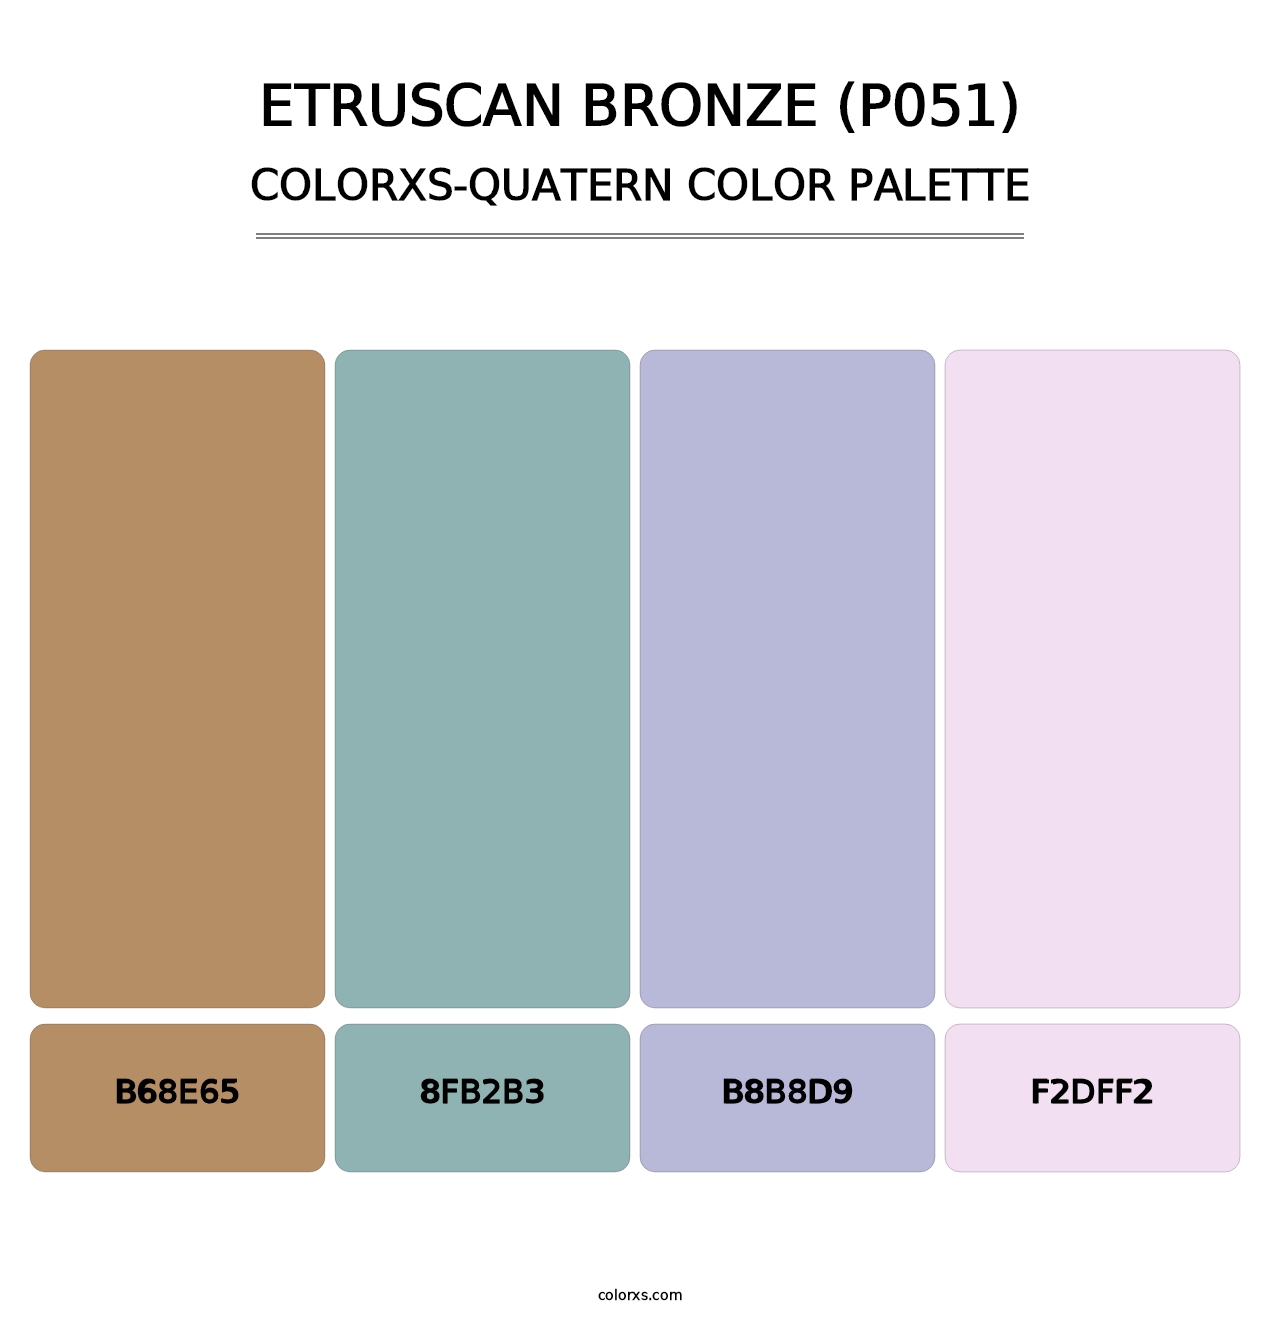 Etruscan Bronze (P051) - Colorxs Quatern Palette